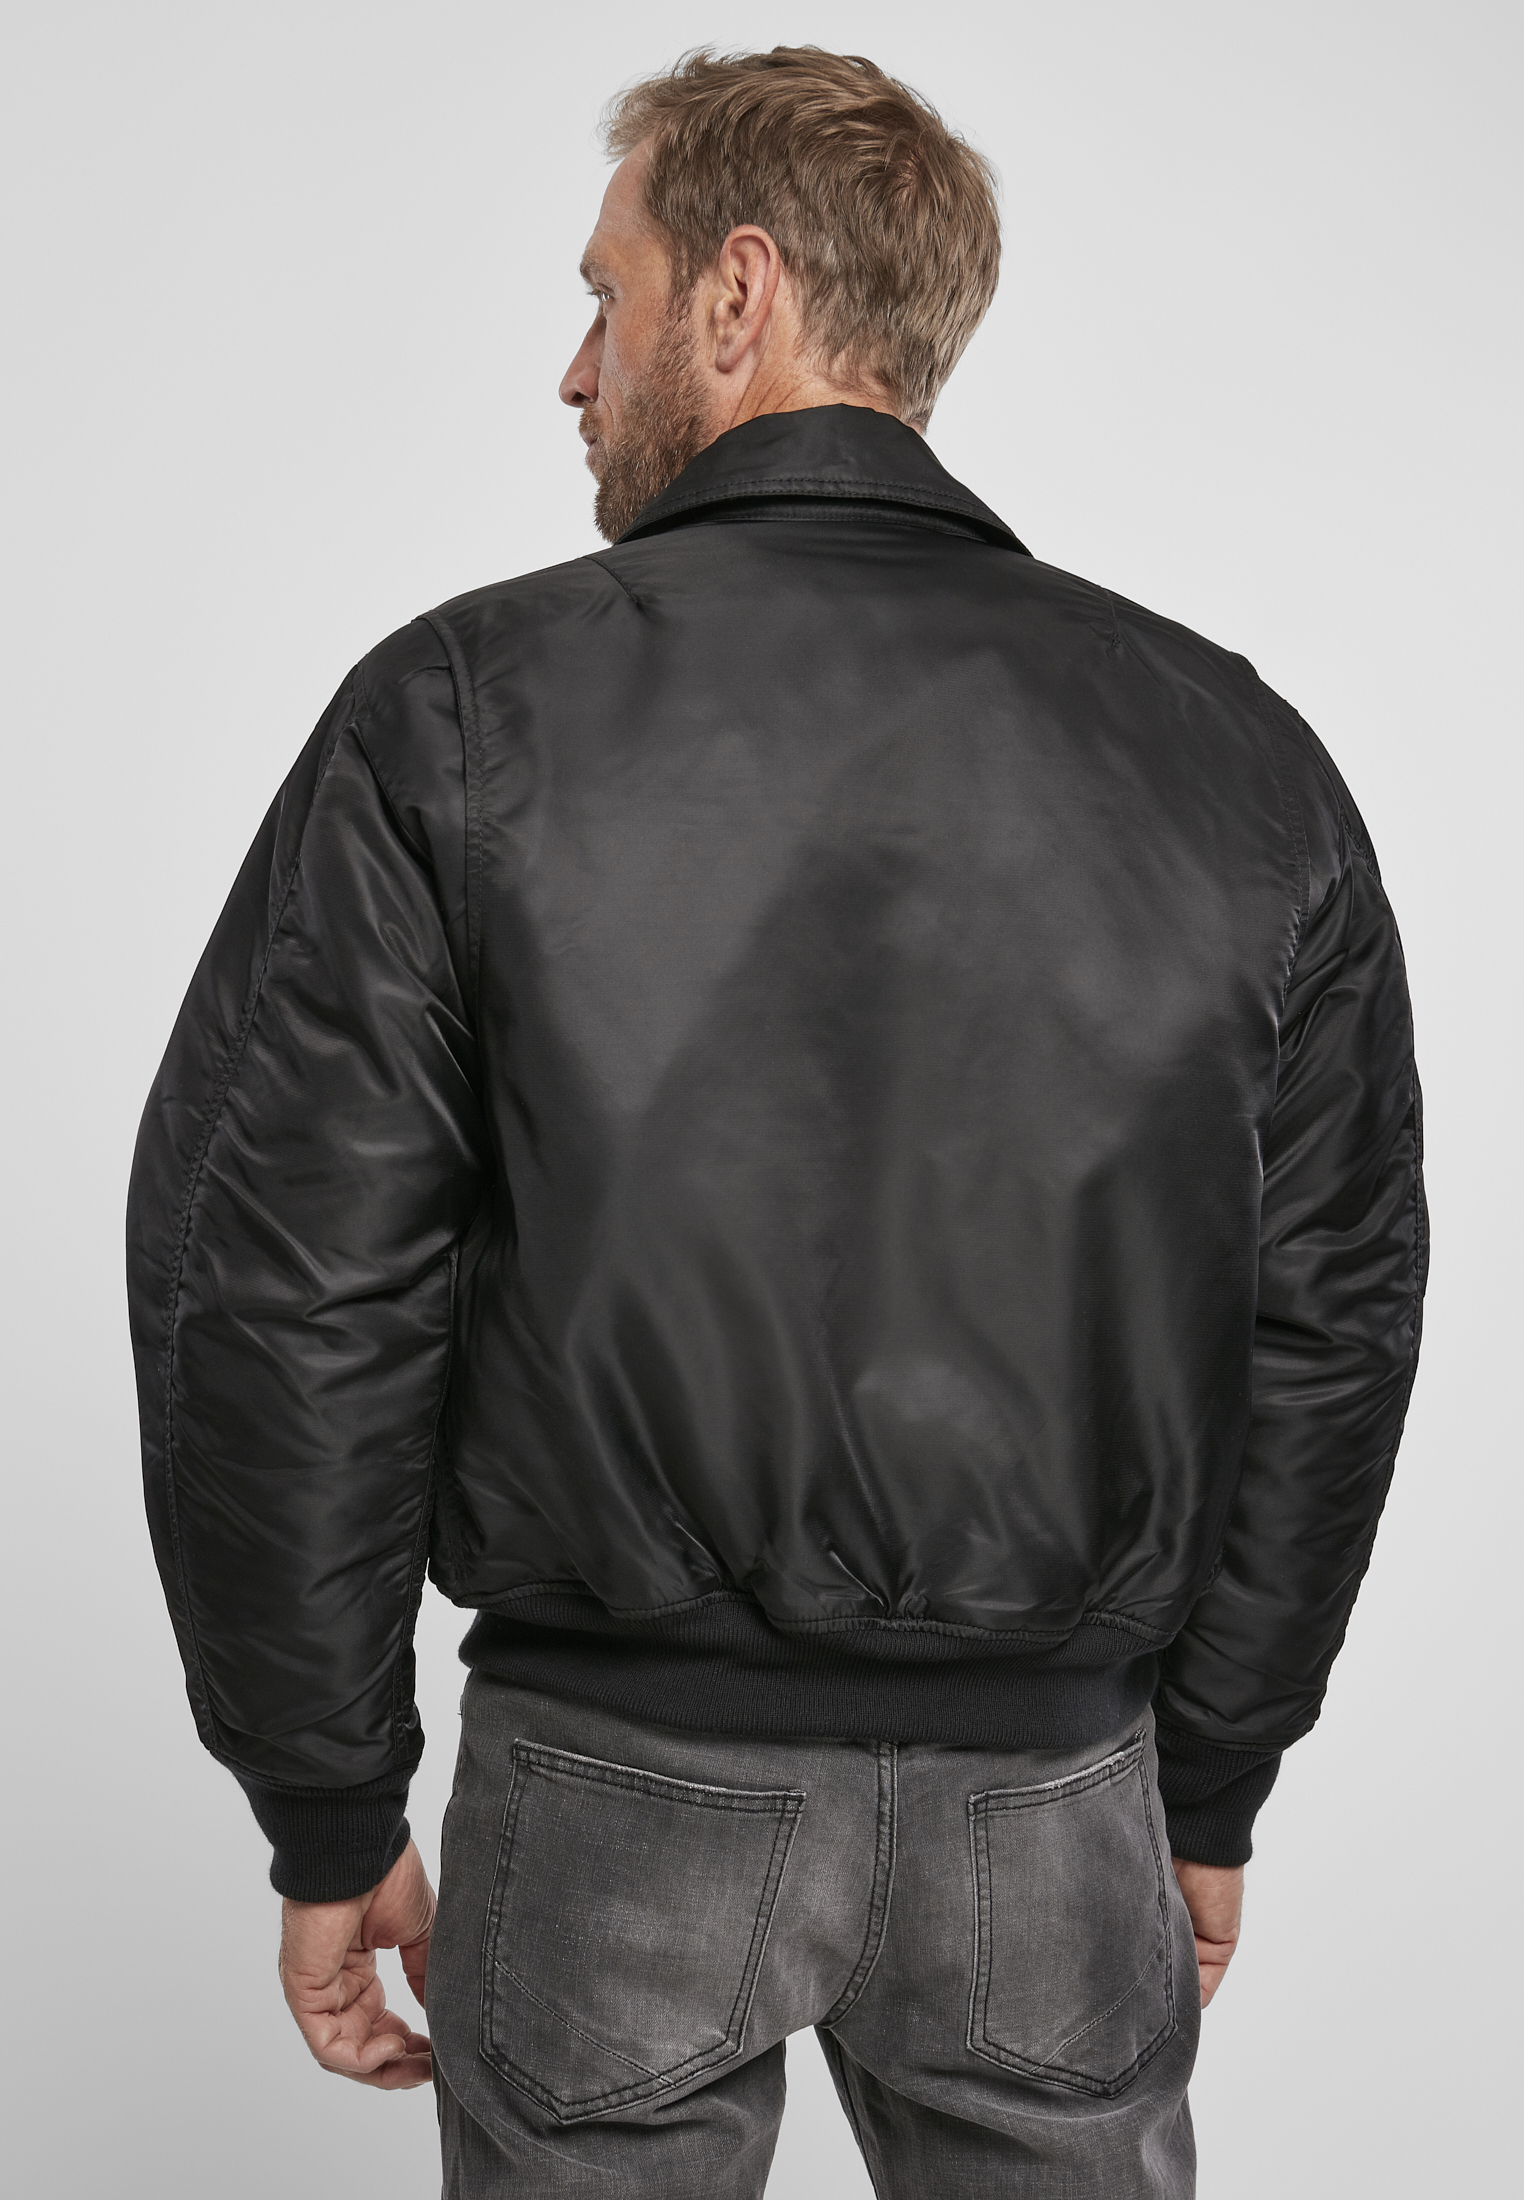 Jacken CWU Jacket in Farbe black